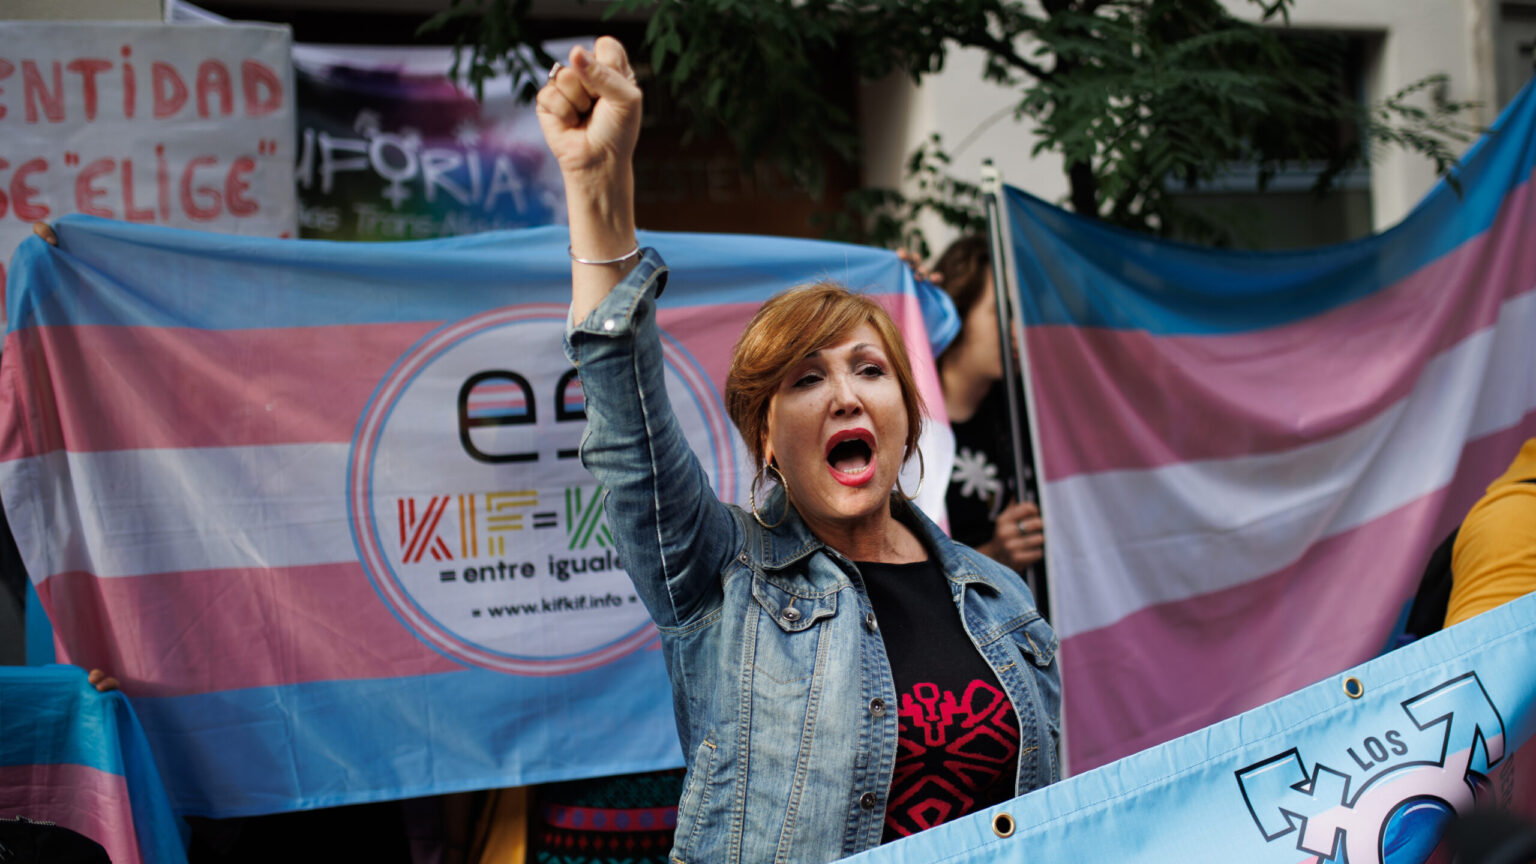 El PSOE registra sus enmiendas a la ‘ley trans’ para limitar la autodeterminación de género